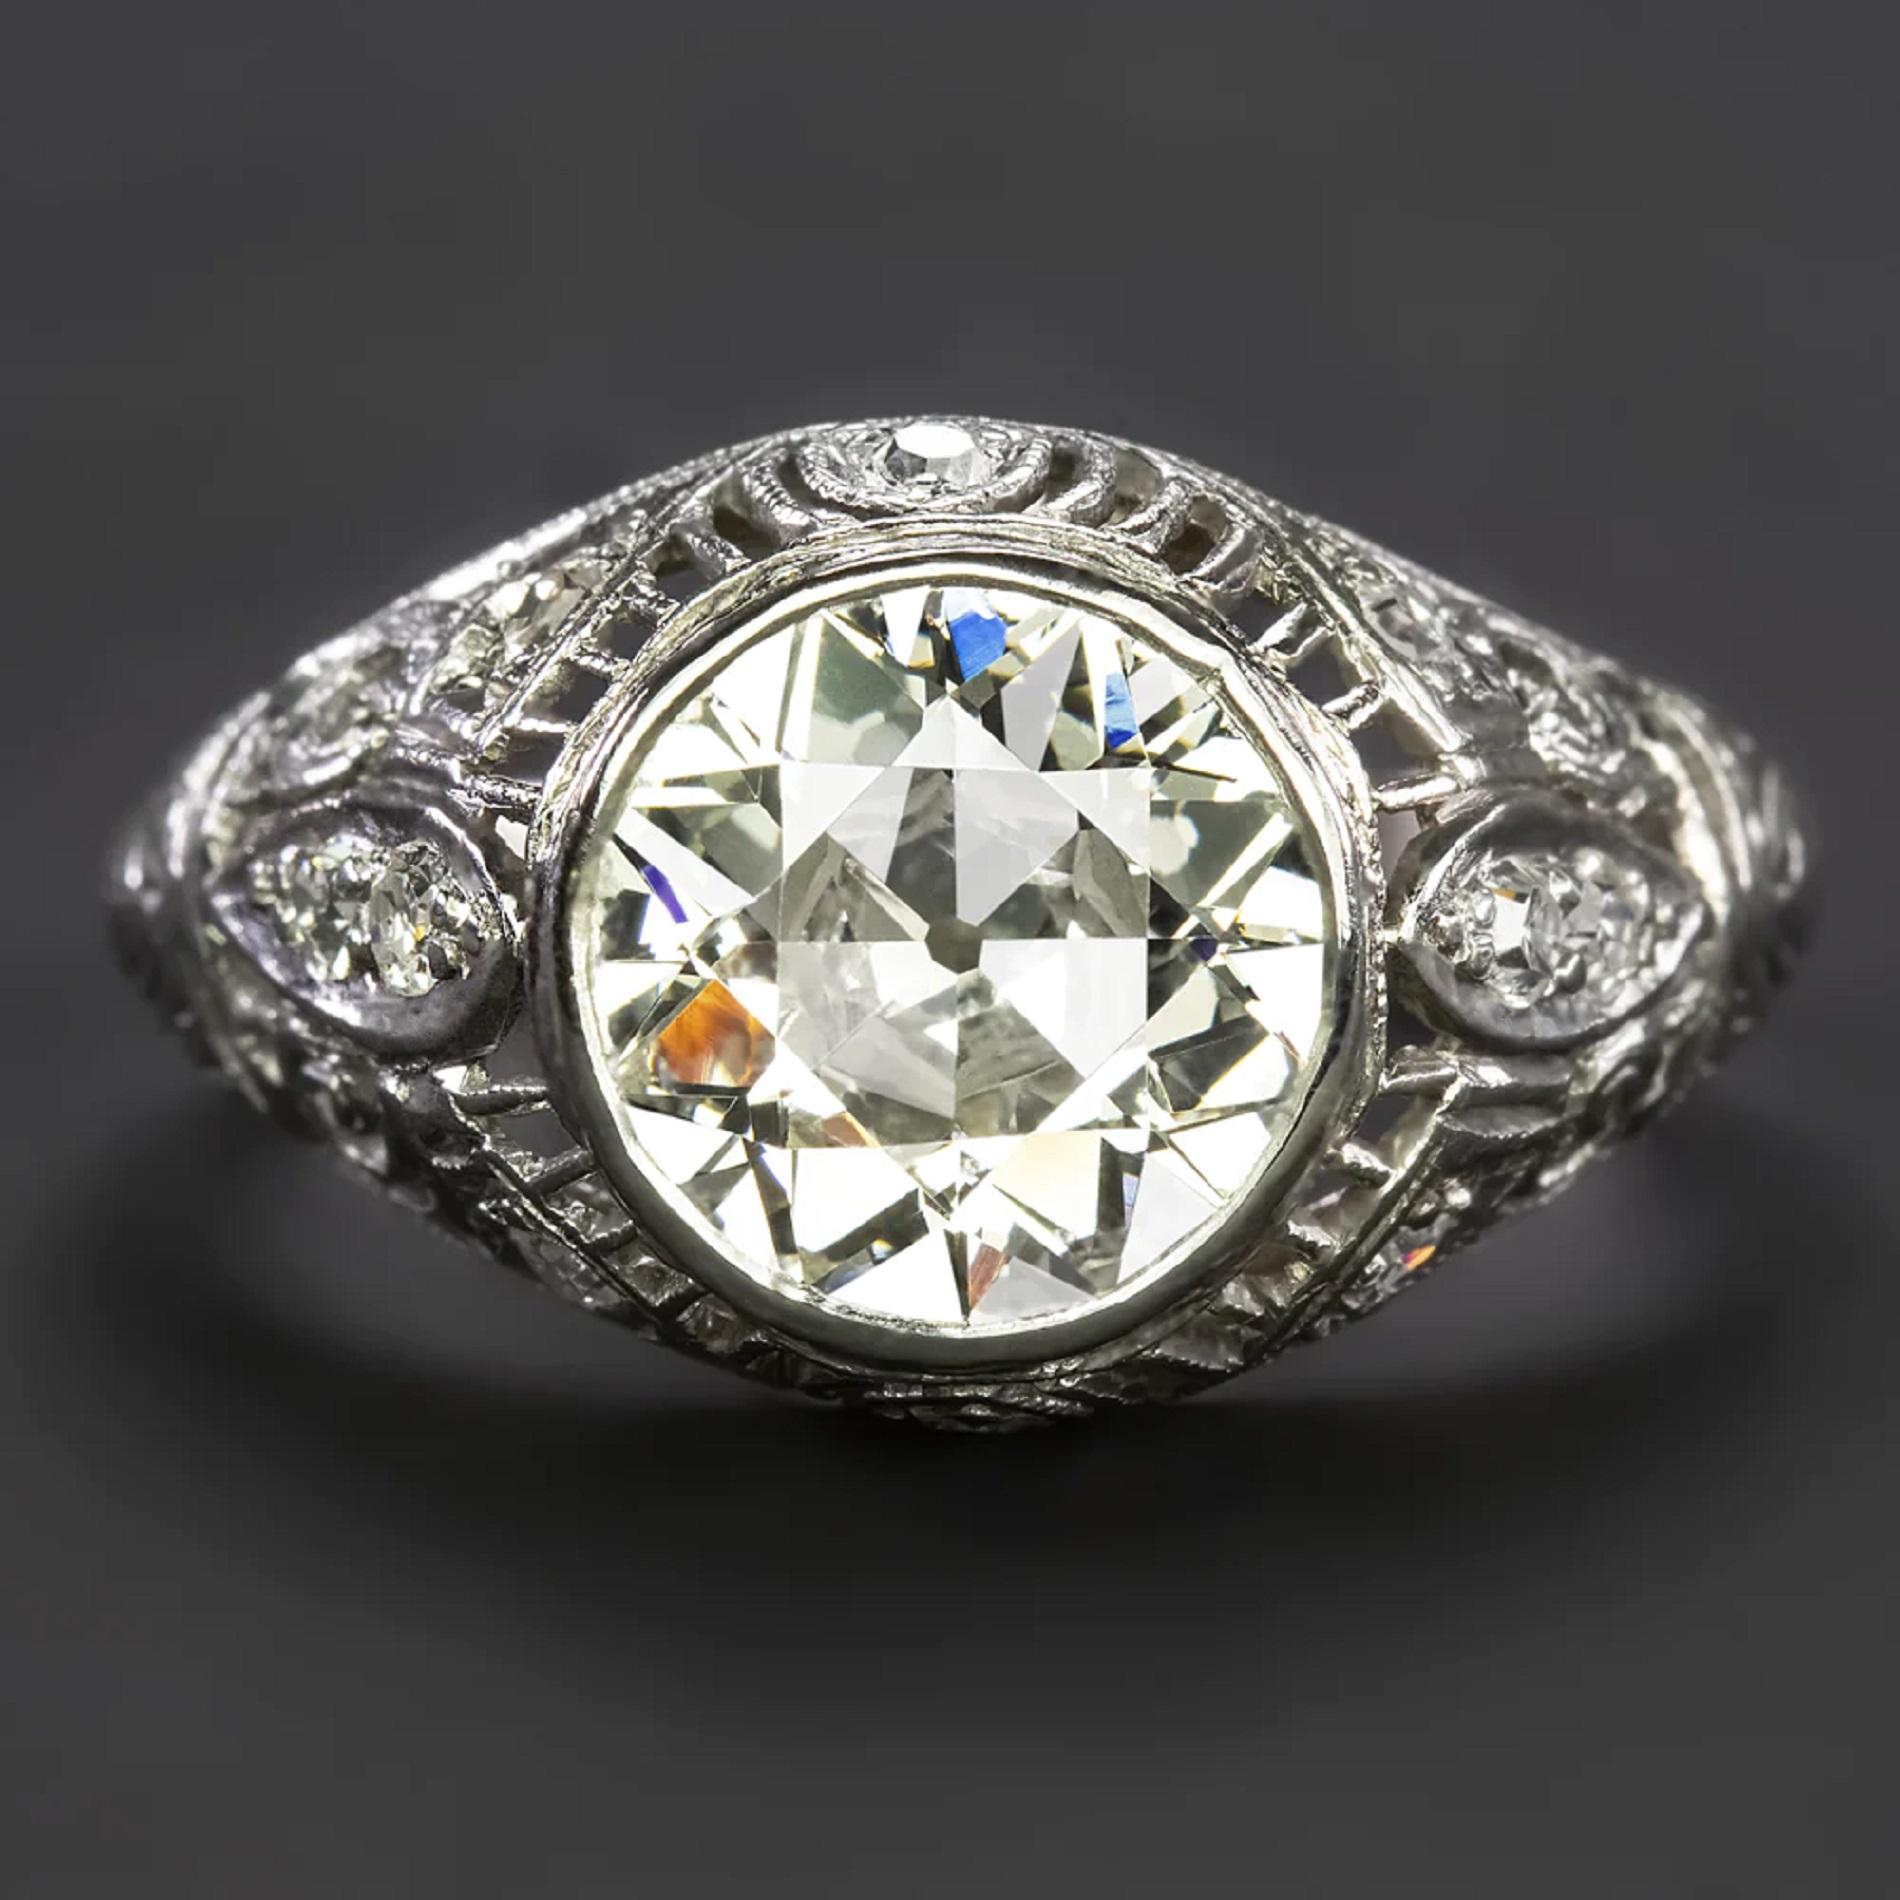 Fabriquée à l'époque Art of Vintage, cette bague de fiançailles vintage a une présence imposante avec un éblouissant diamant de taille européenne de 2,27 carats au centre ! La monture en platine est magnifiquement ornée d'un dôme filigrané et serti